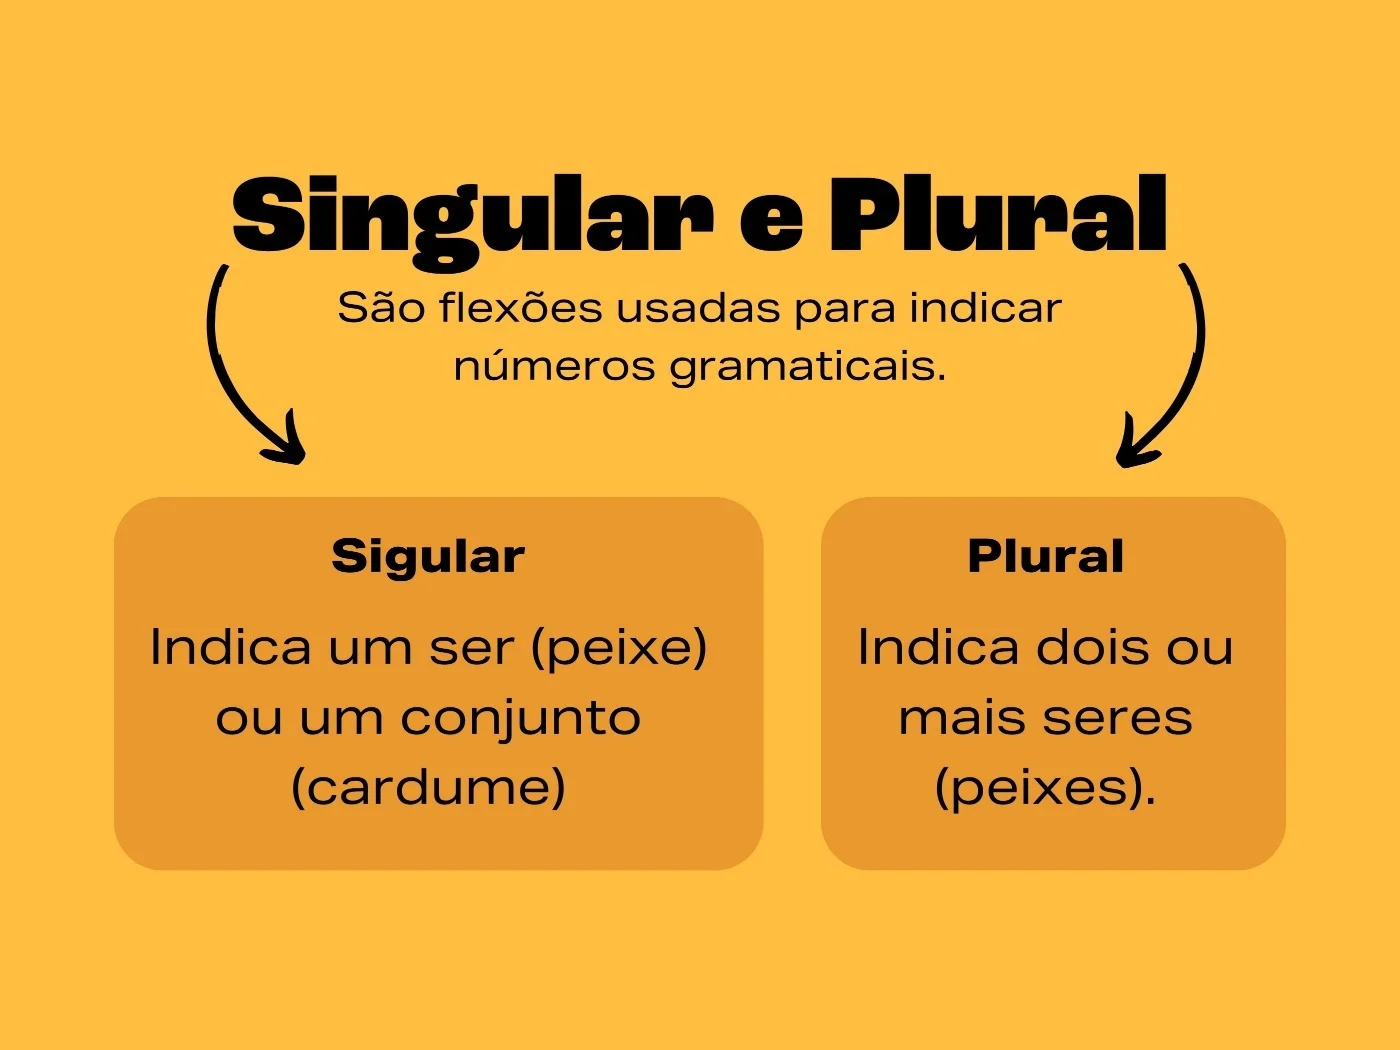 Português sem erros! Você sabe as regras básicas do plural? Aprenda agora!